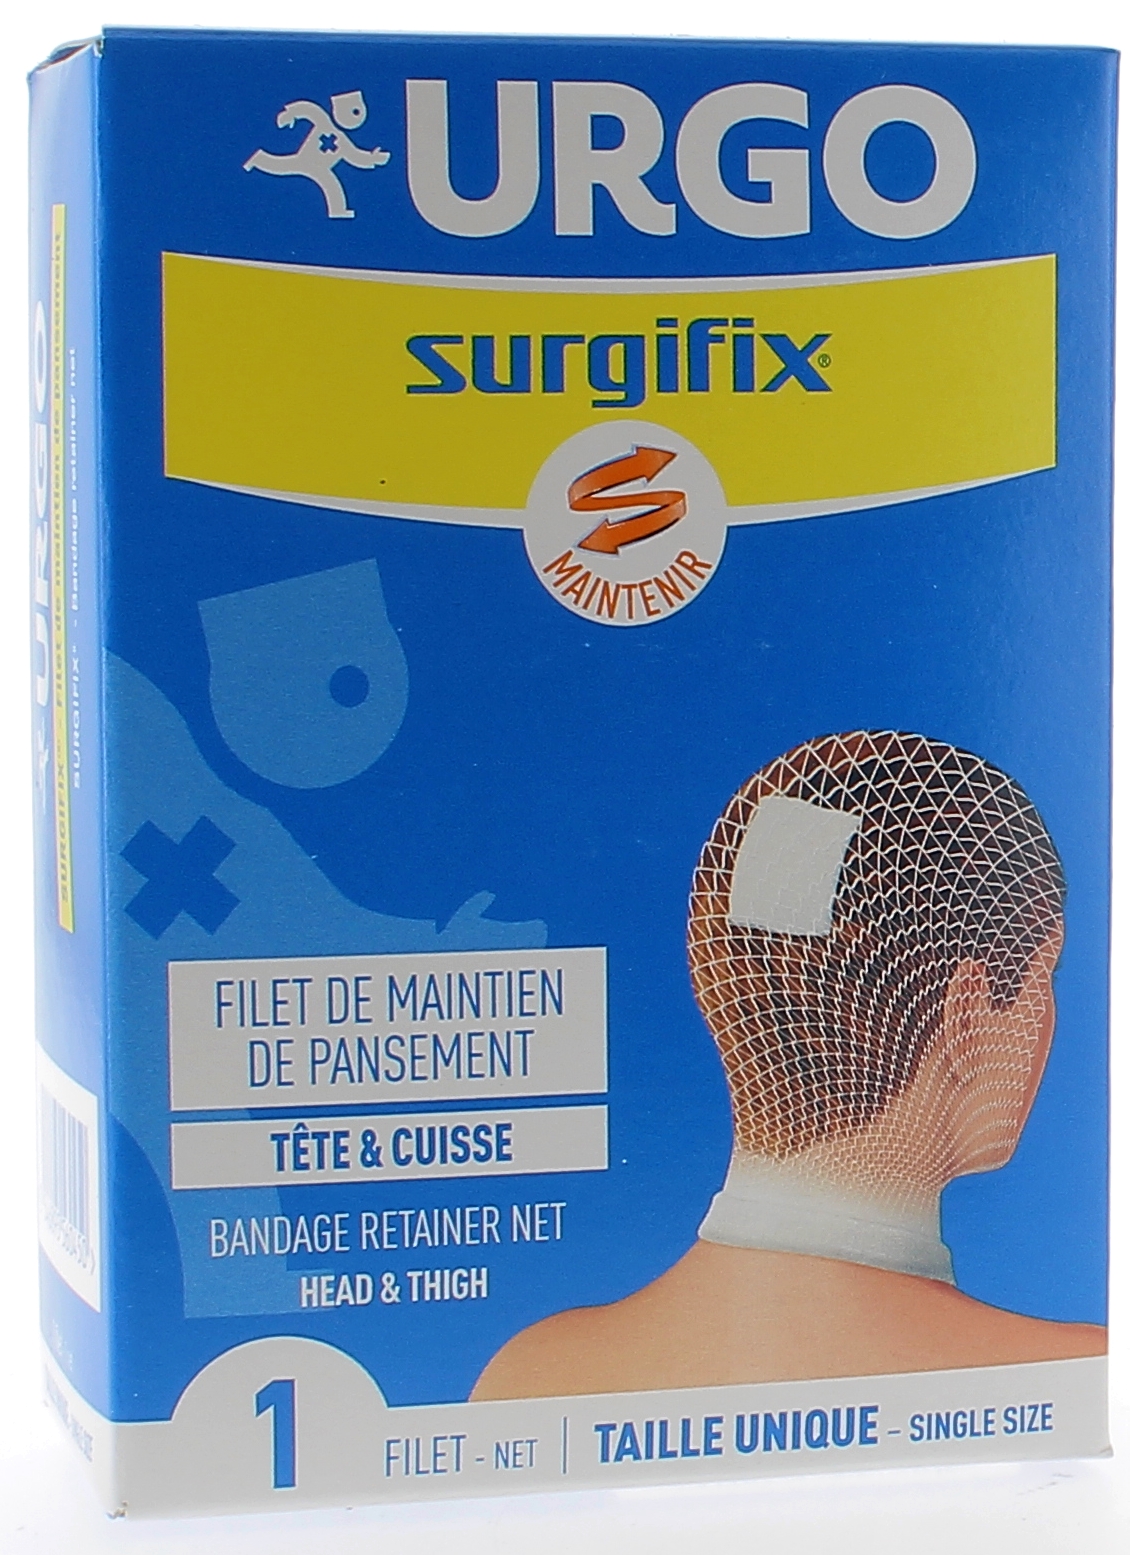 Surgifix Filet de maintien de pansement tête & cuisse Urgo - 1 filet